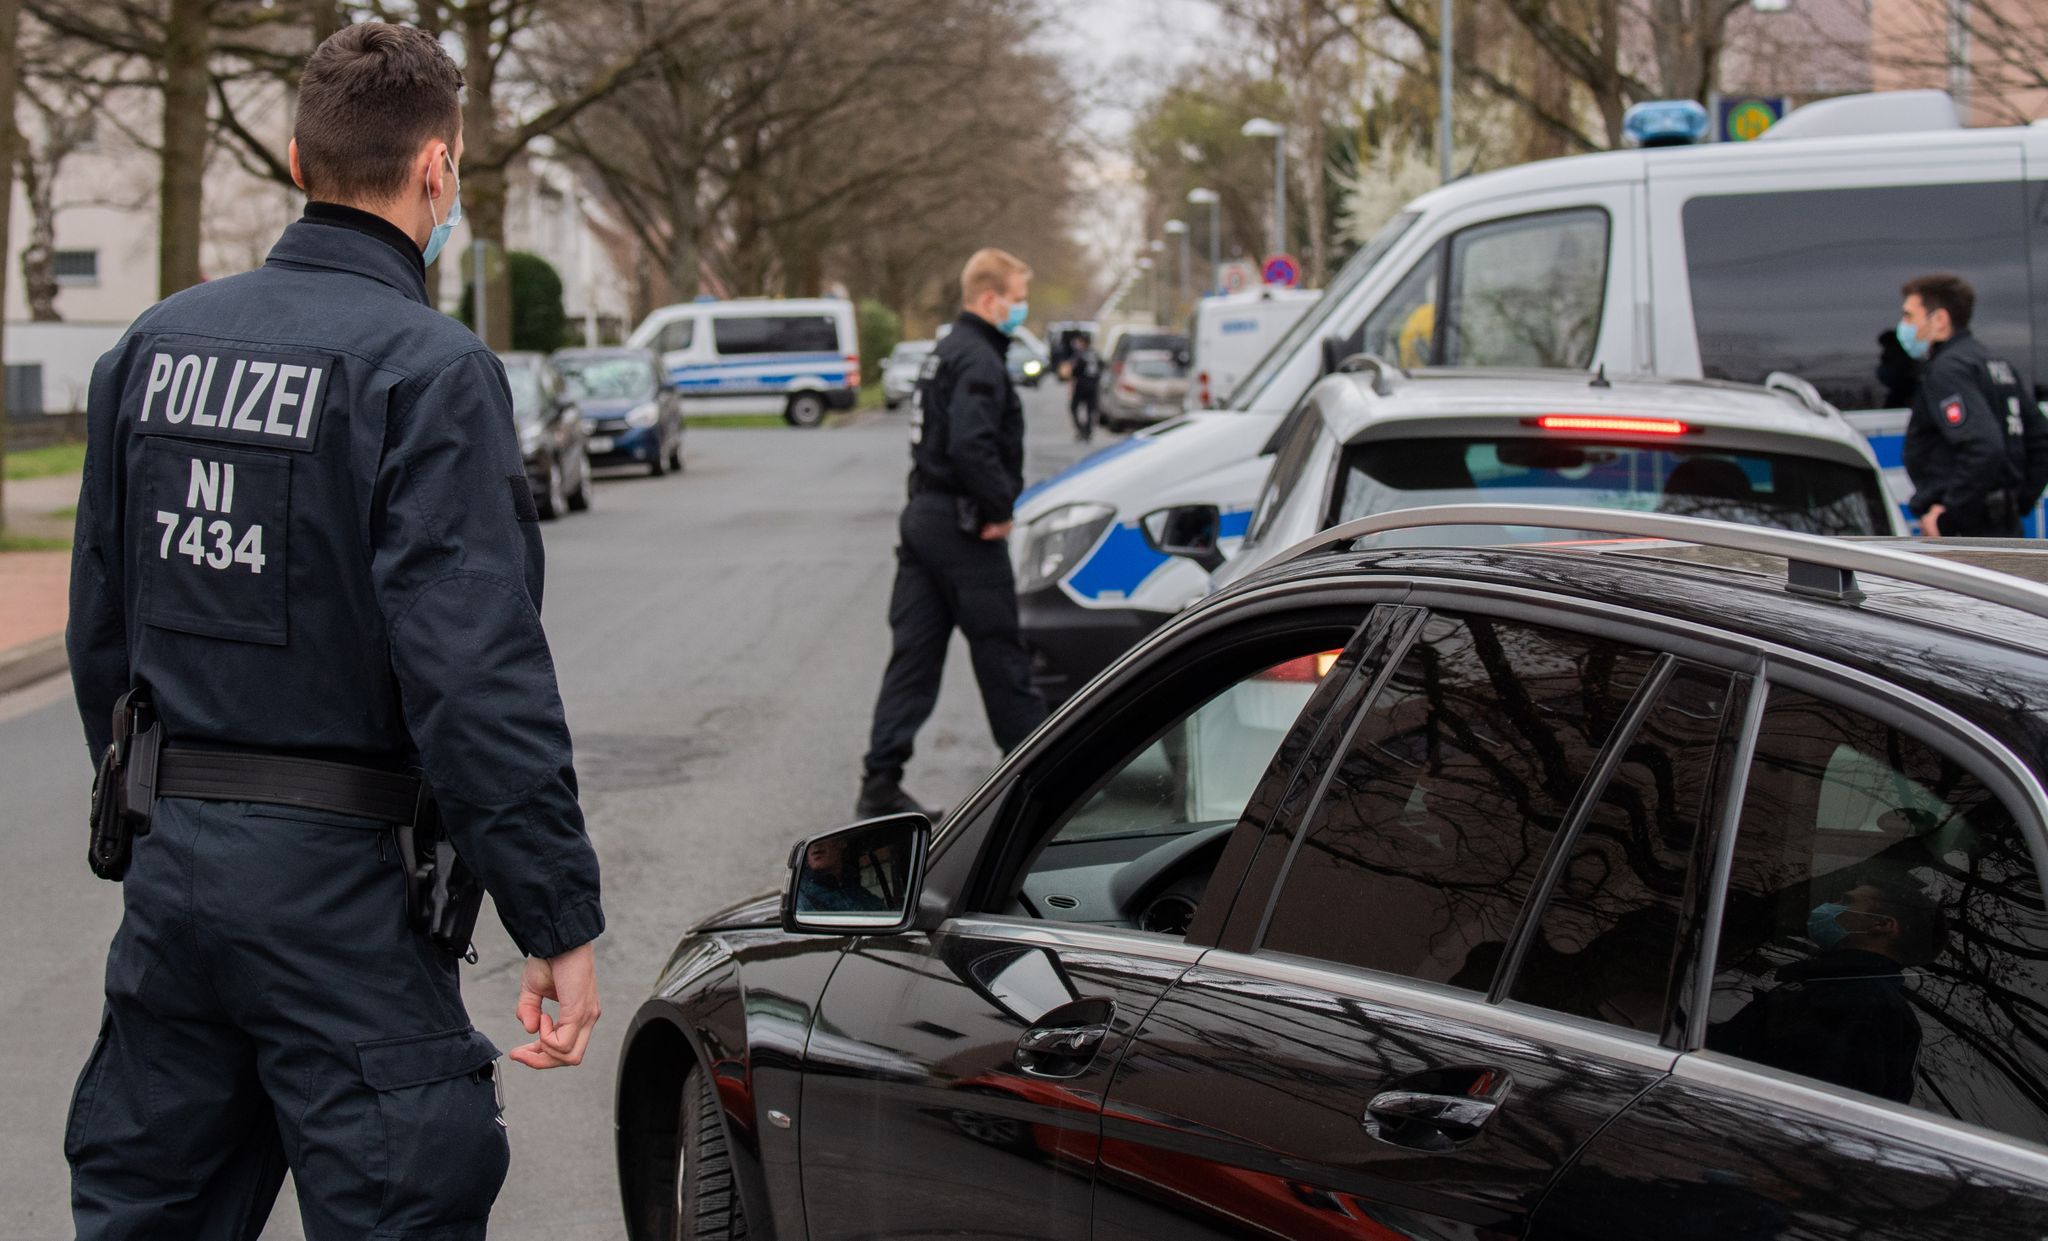 Polizisten kontrollieren ein Wohngebiet, in dem Niedersachsens Ministerpräsident Weil wohnt. Foto: Julian Stratenschulte / dpa